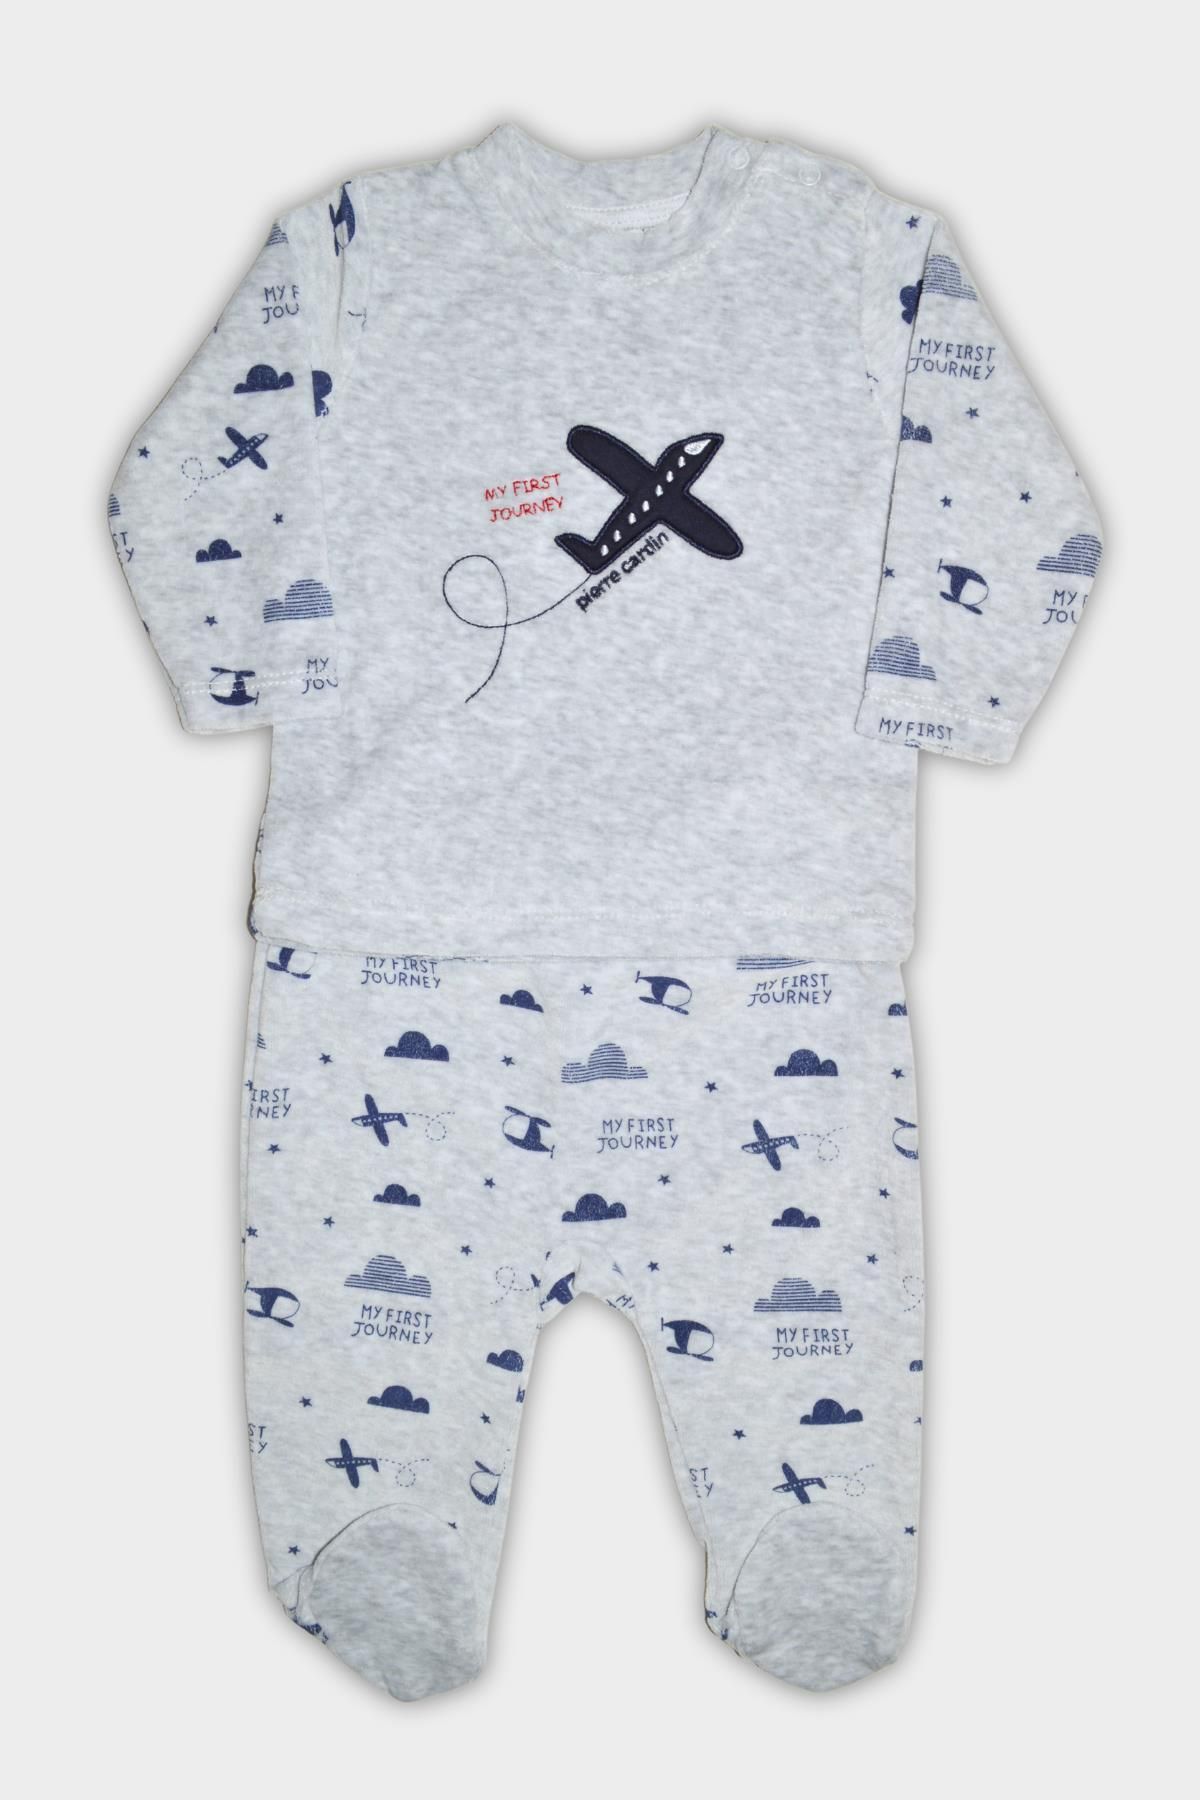 Pierre Cardin Uçak Desenli Kadife Kışlık Bebek Takımı Gri 305226